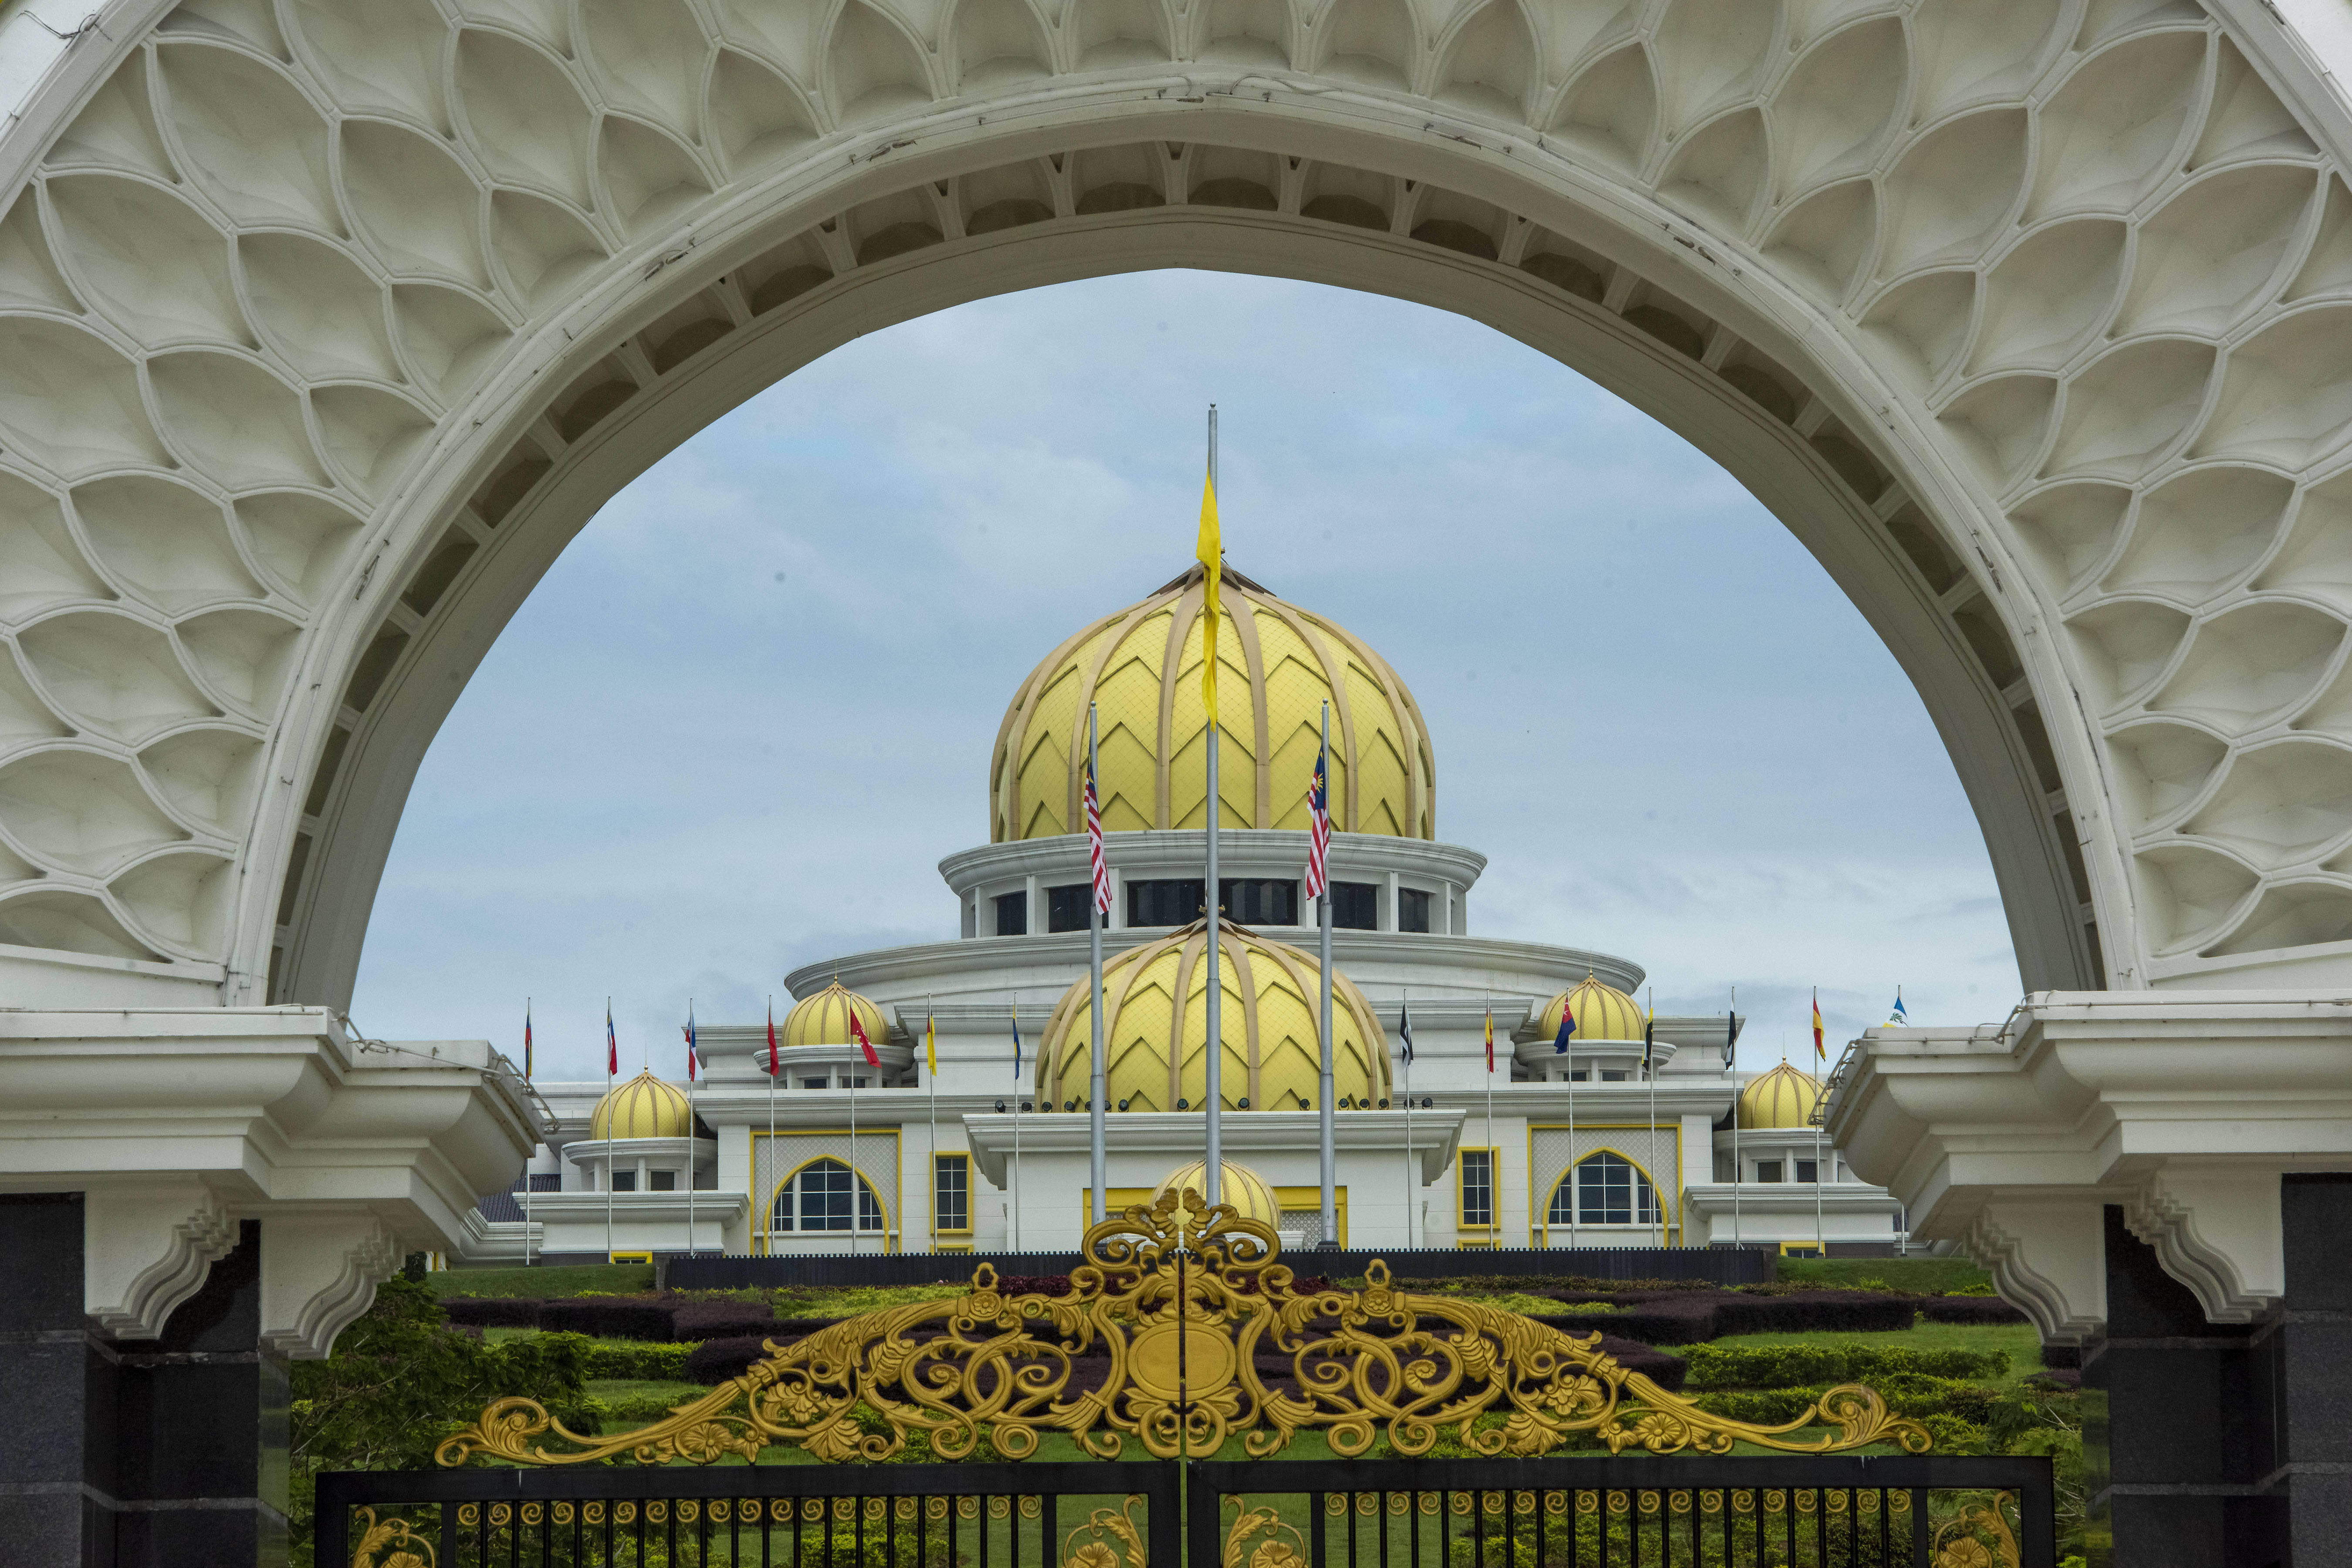 这是8月16日拍摄的位于马来西亚吉隆坡的国家皇宫.